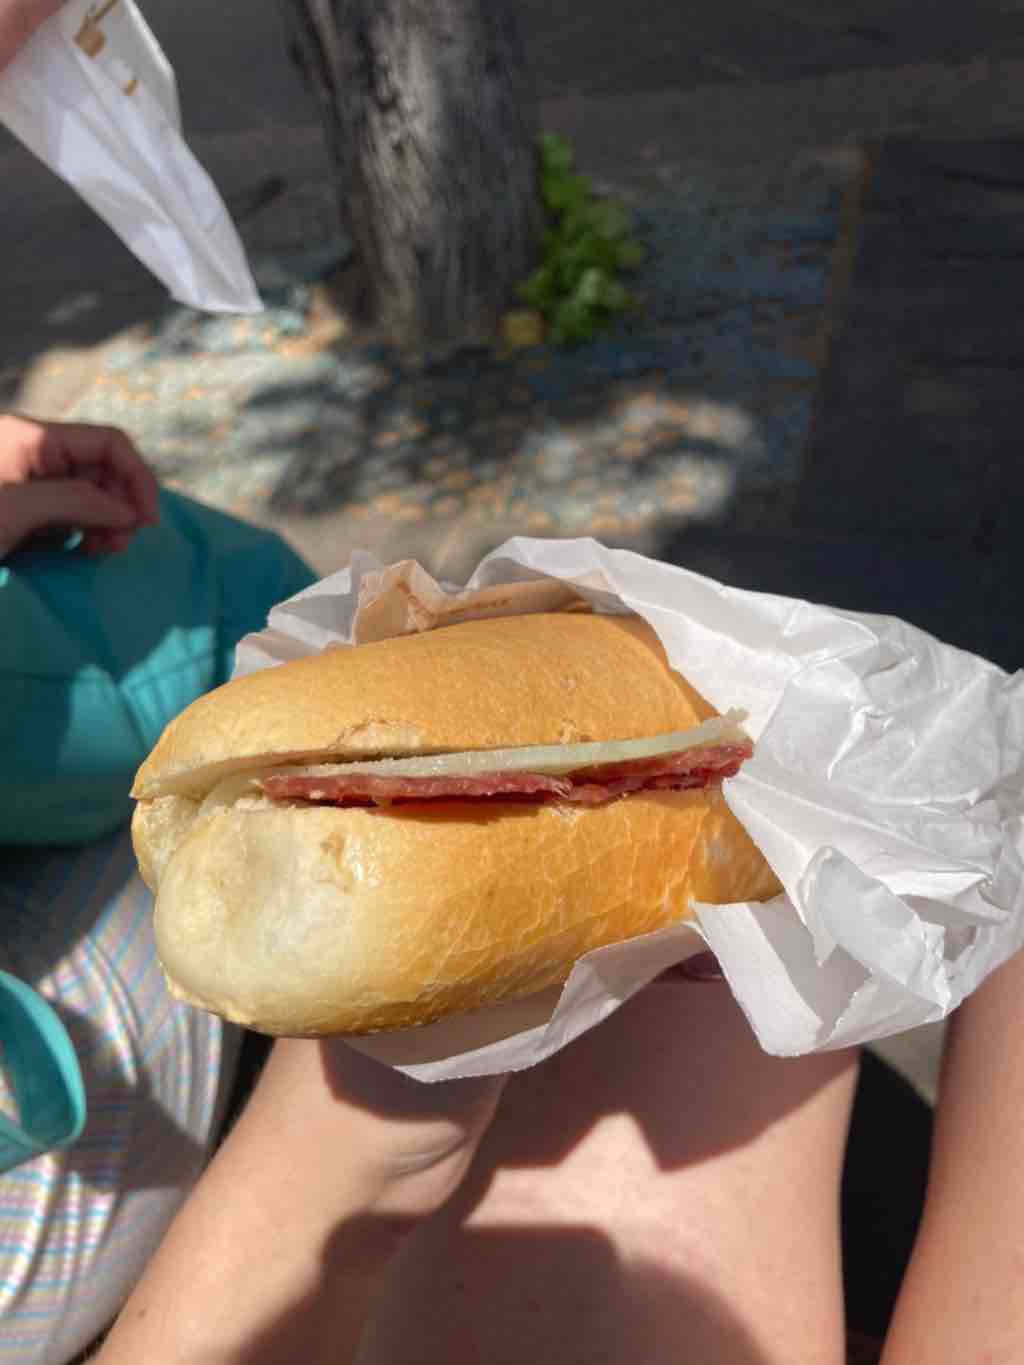 Obrázok, na ktorom je osoba, malé občerstvenie, sendvič

Automaticky generovaný popis